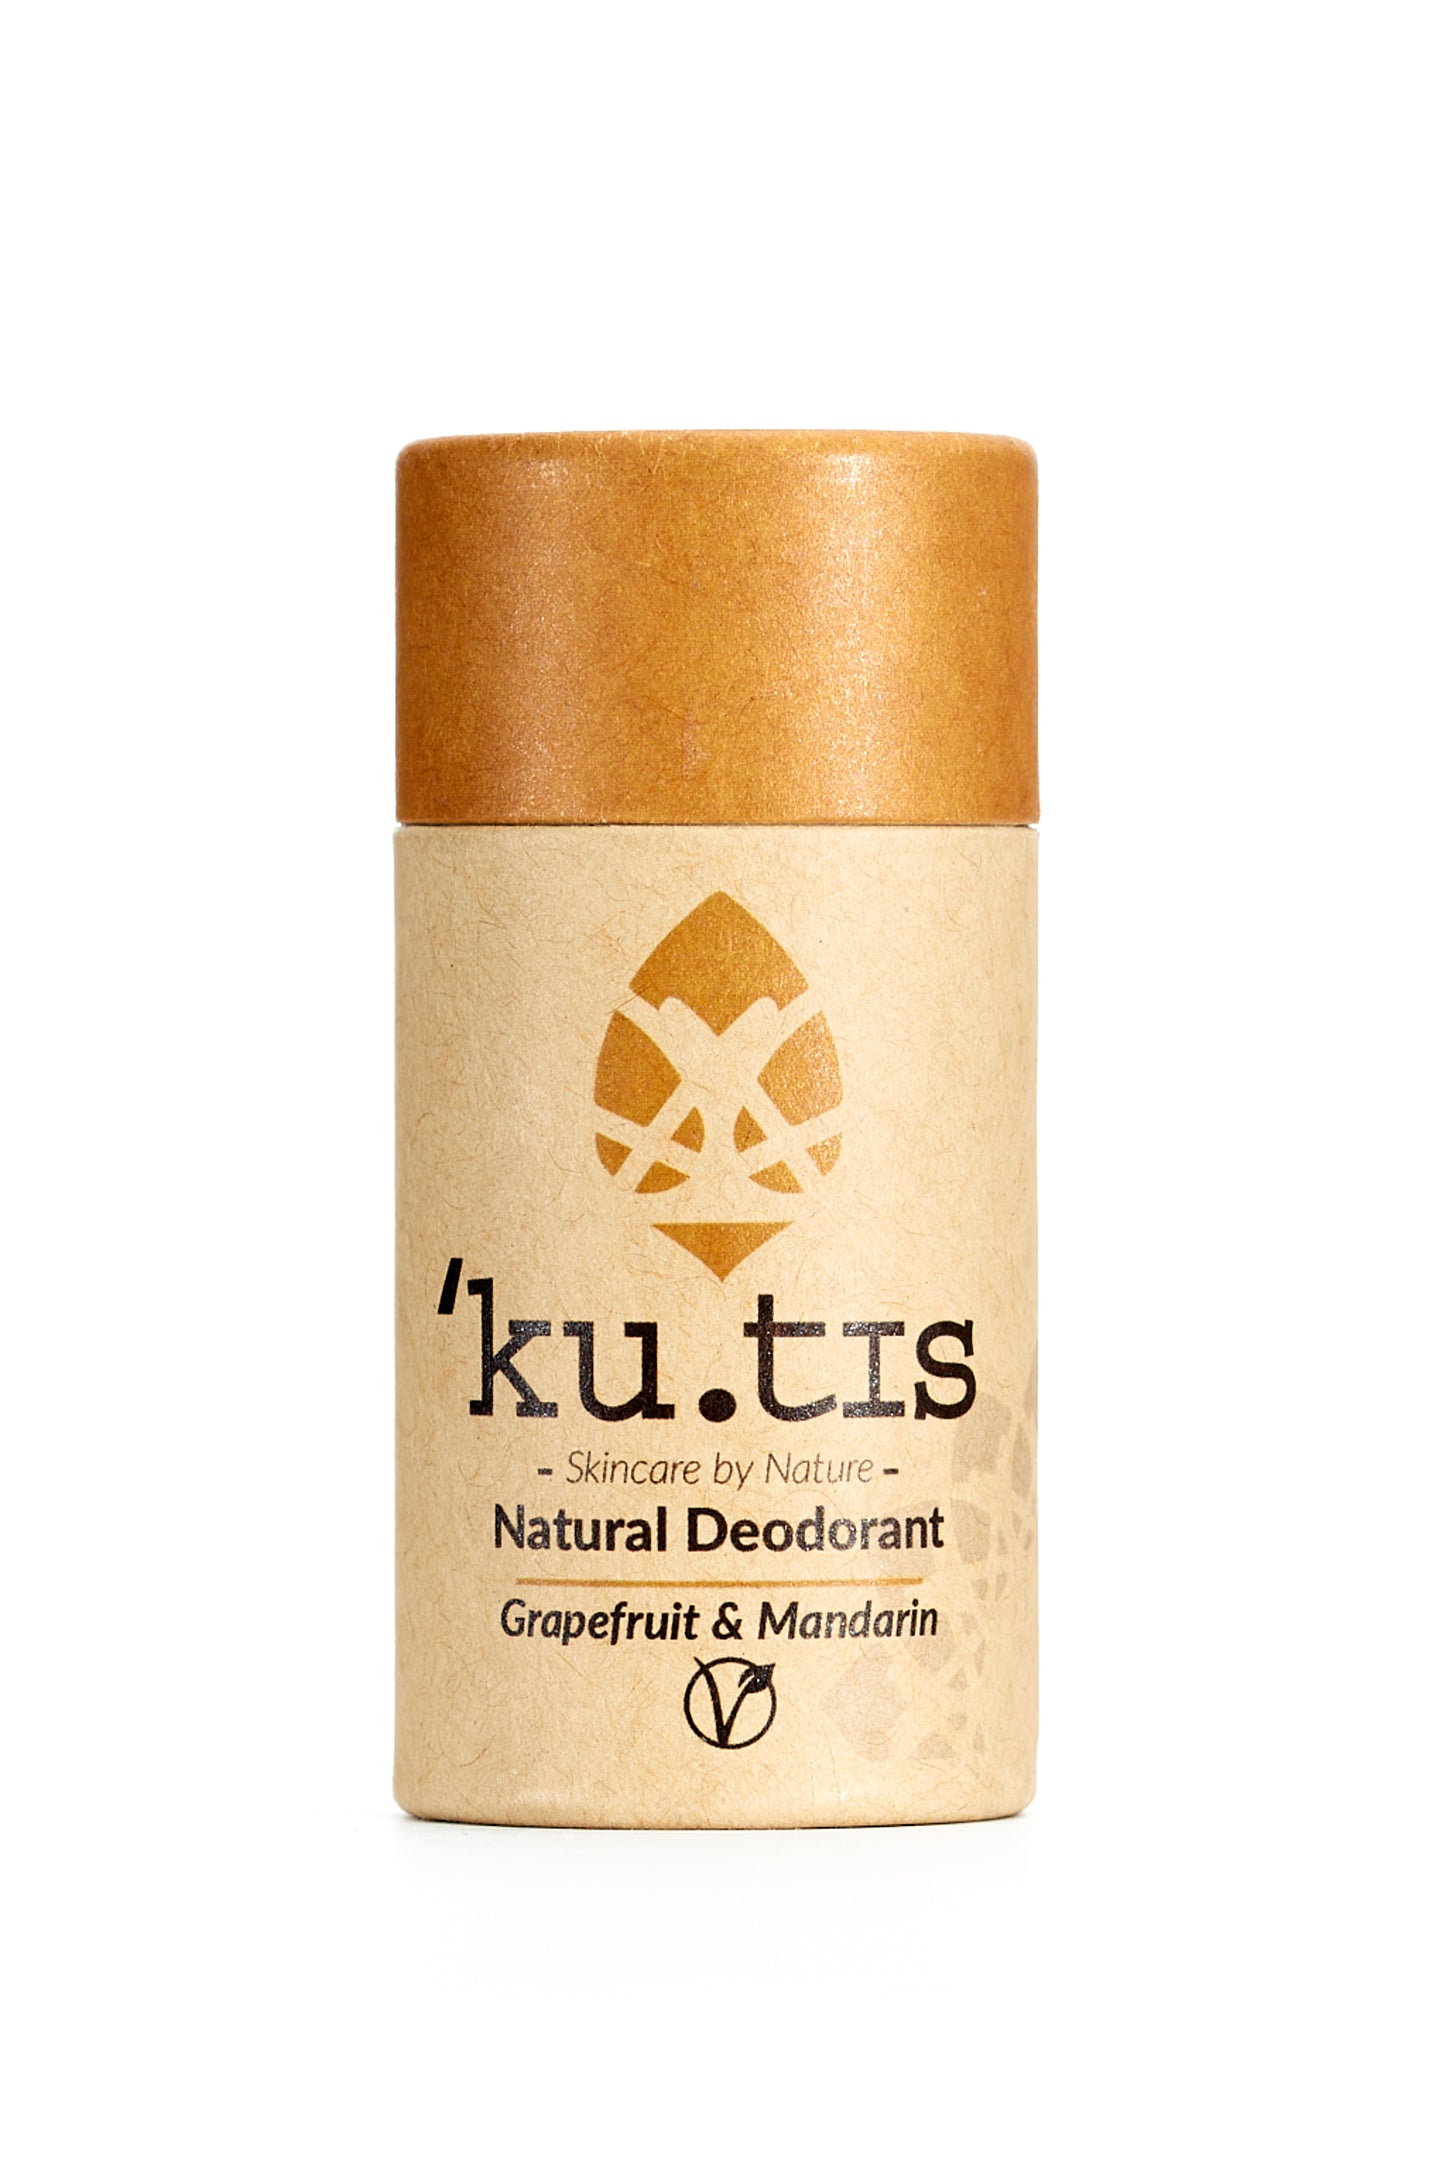 Natural Deodorant (Vegan) - Grapefruit & Mandarin - Kutis Skincare (5921249231006)